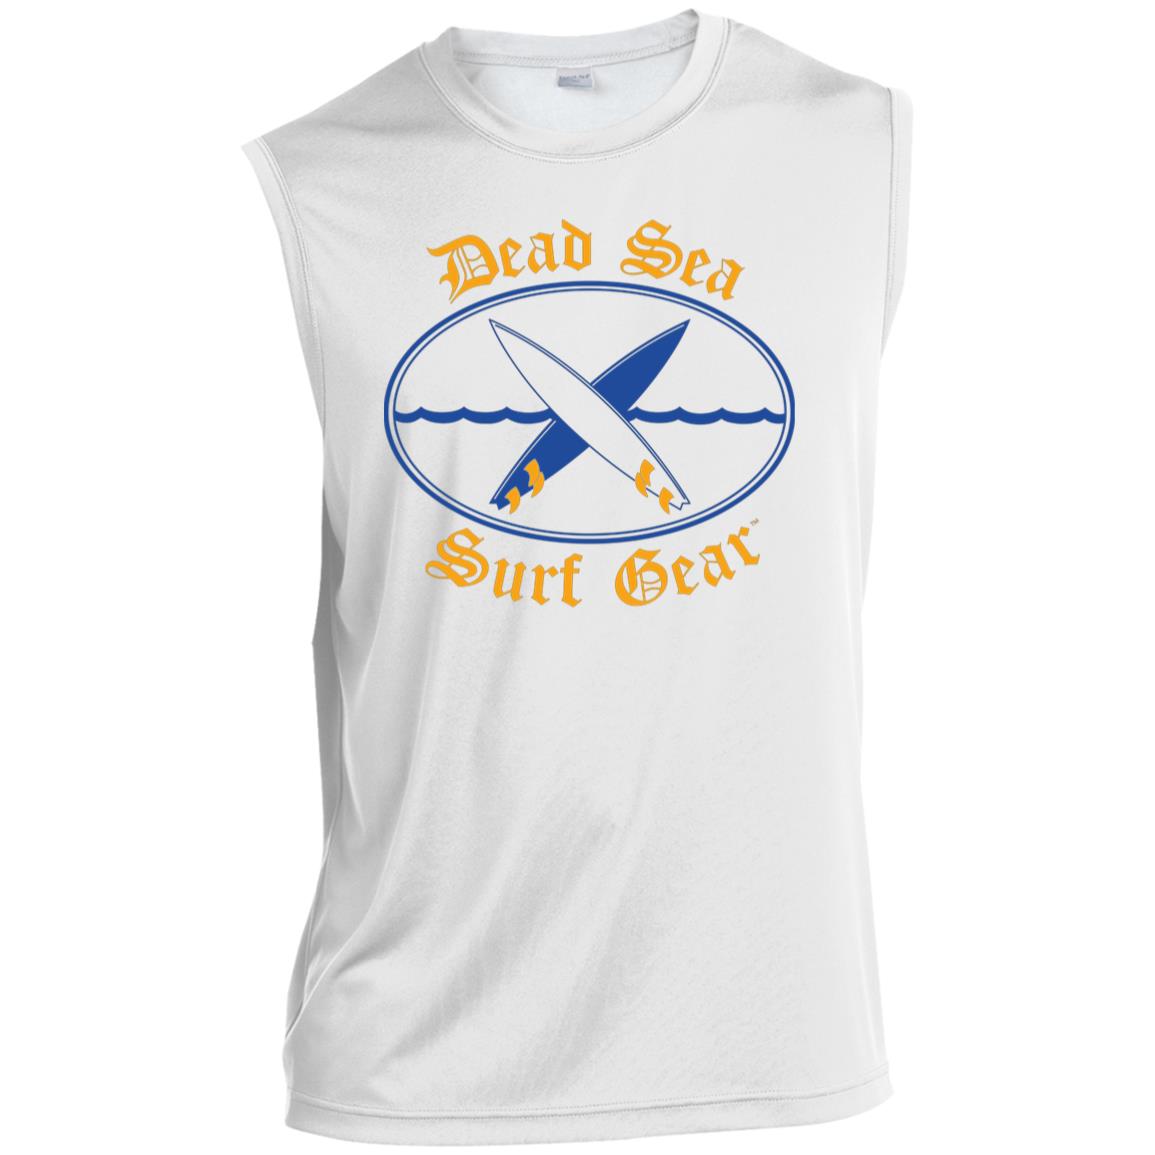 Dead Sea Surf Gear Men’s Sleeveless Performance Shirt